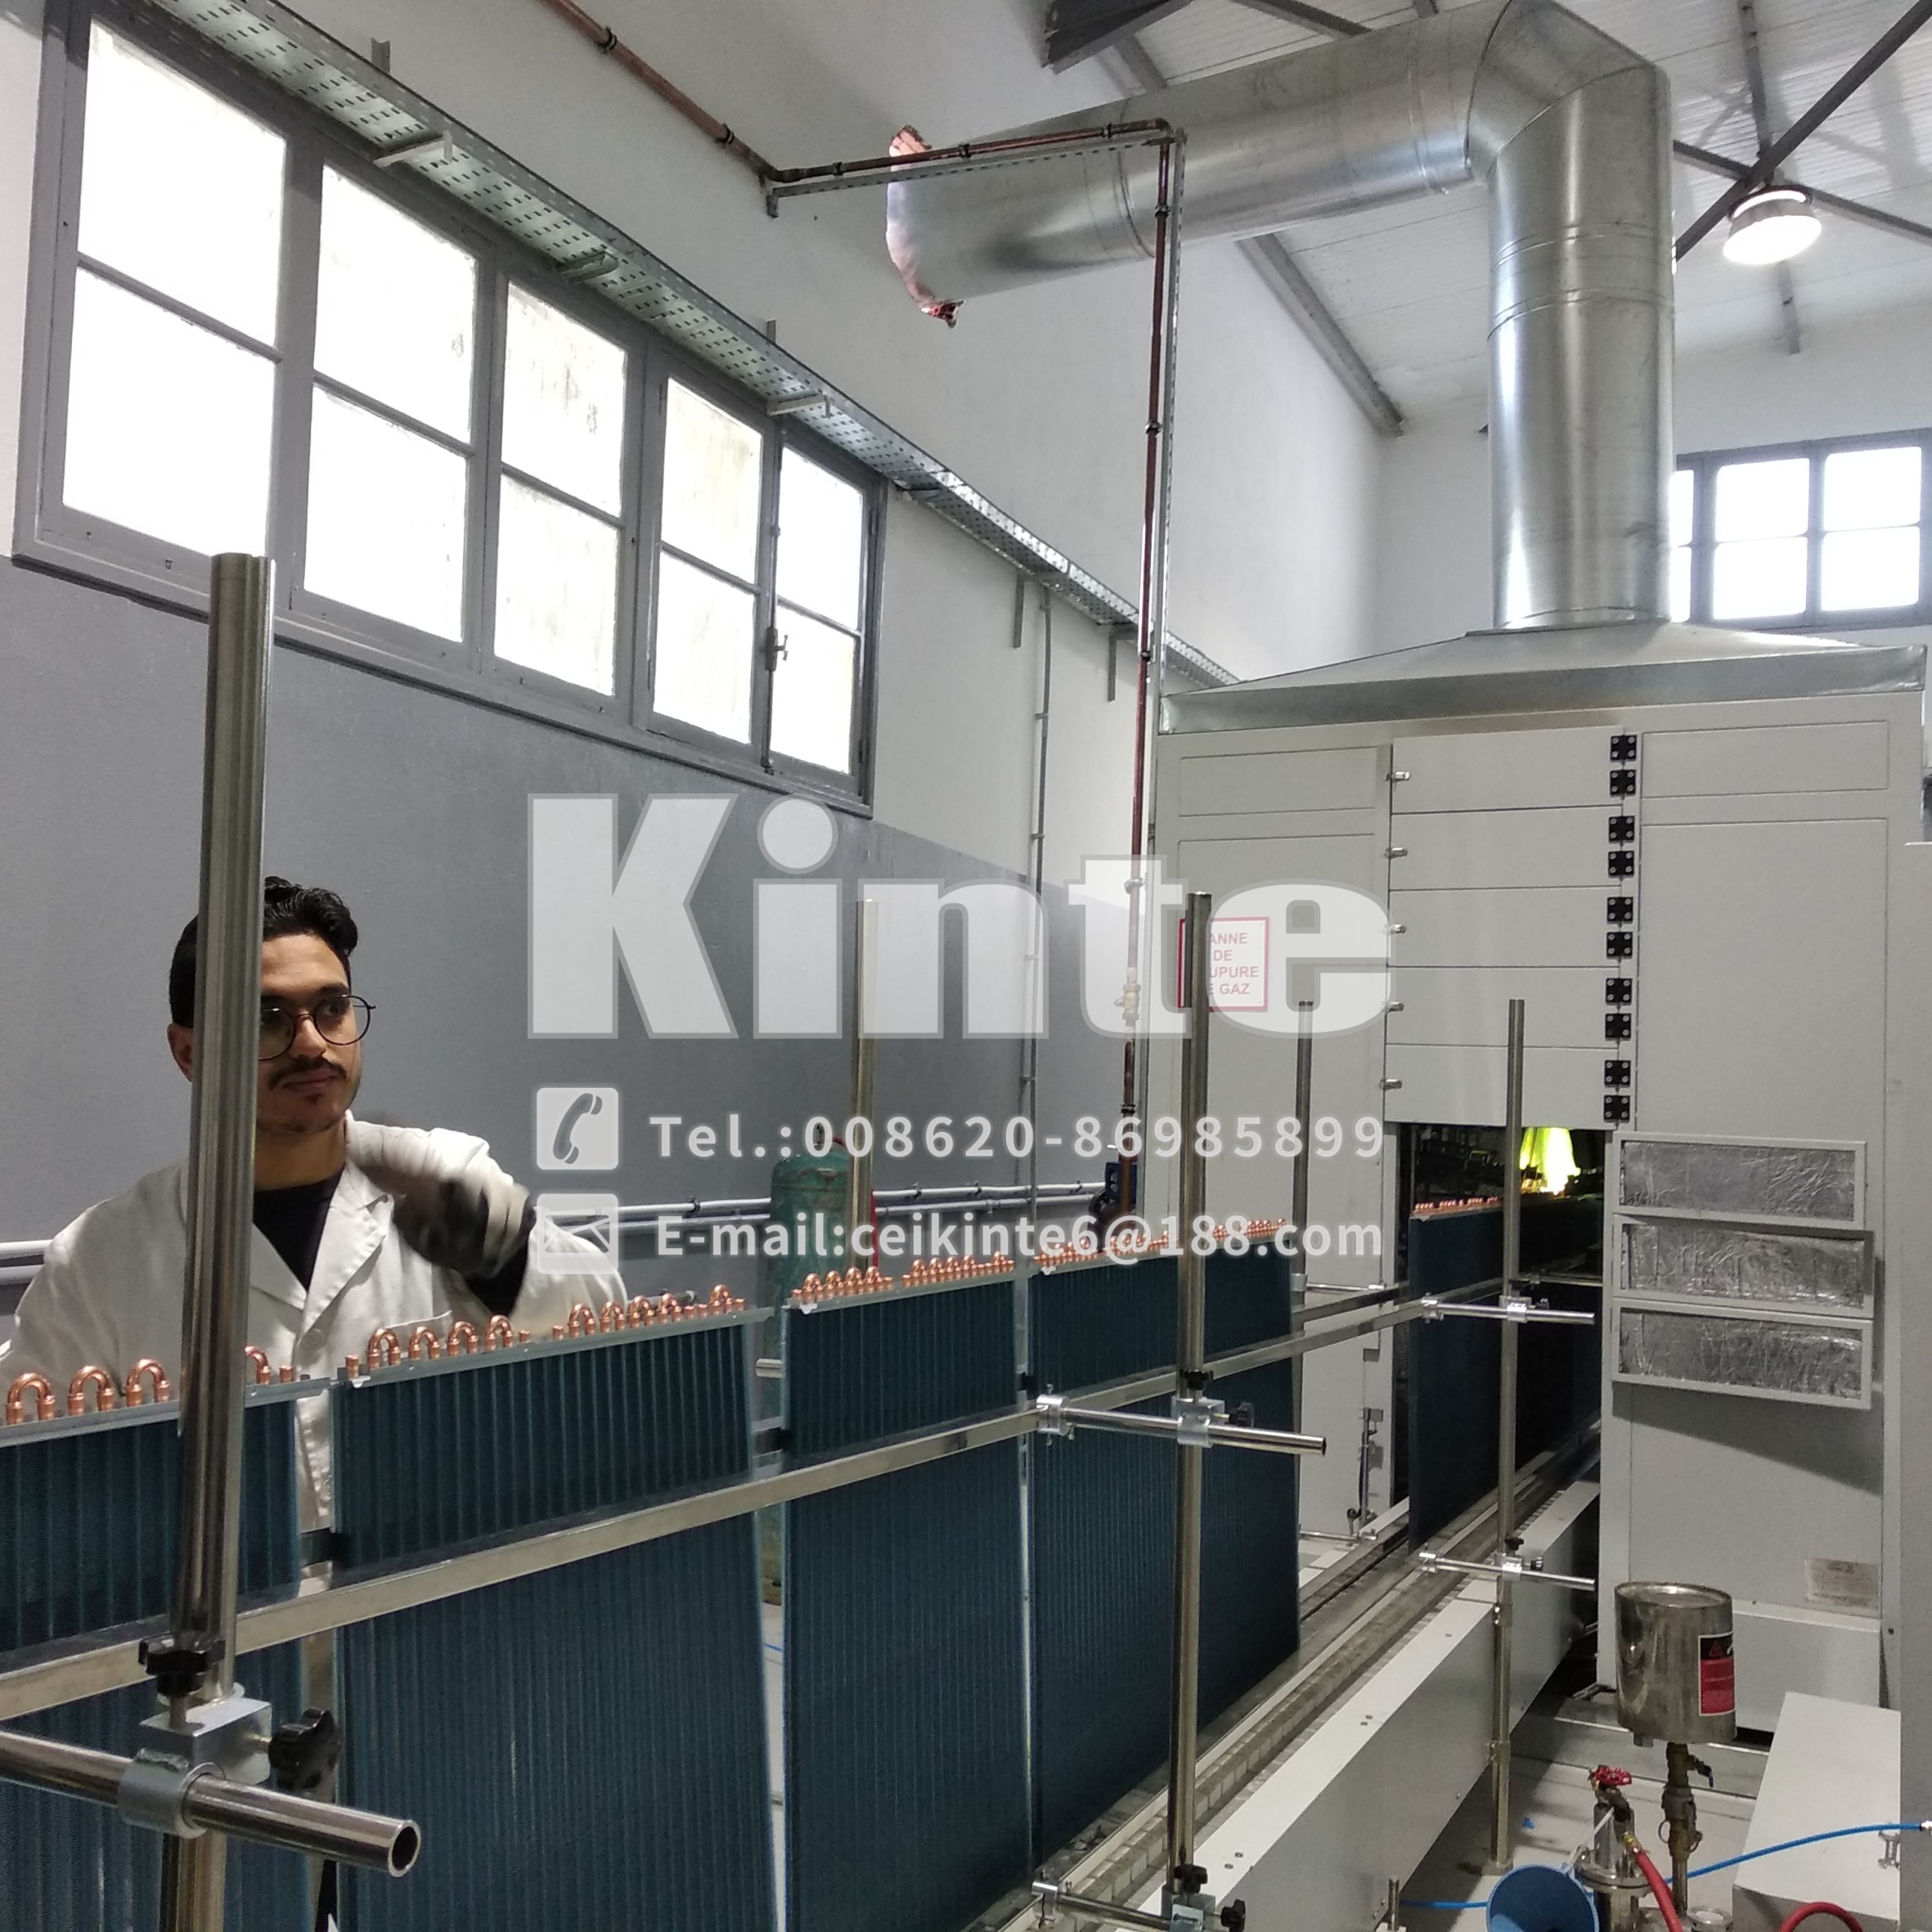 Heat-Exchanger Production Equipment